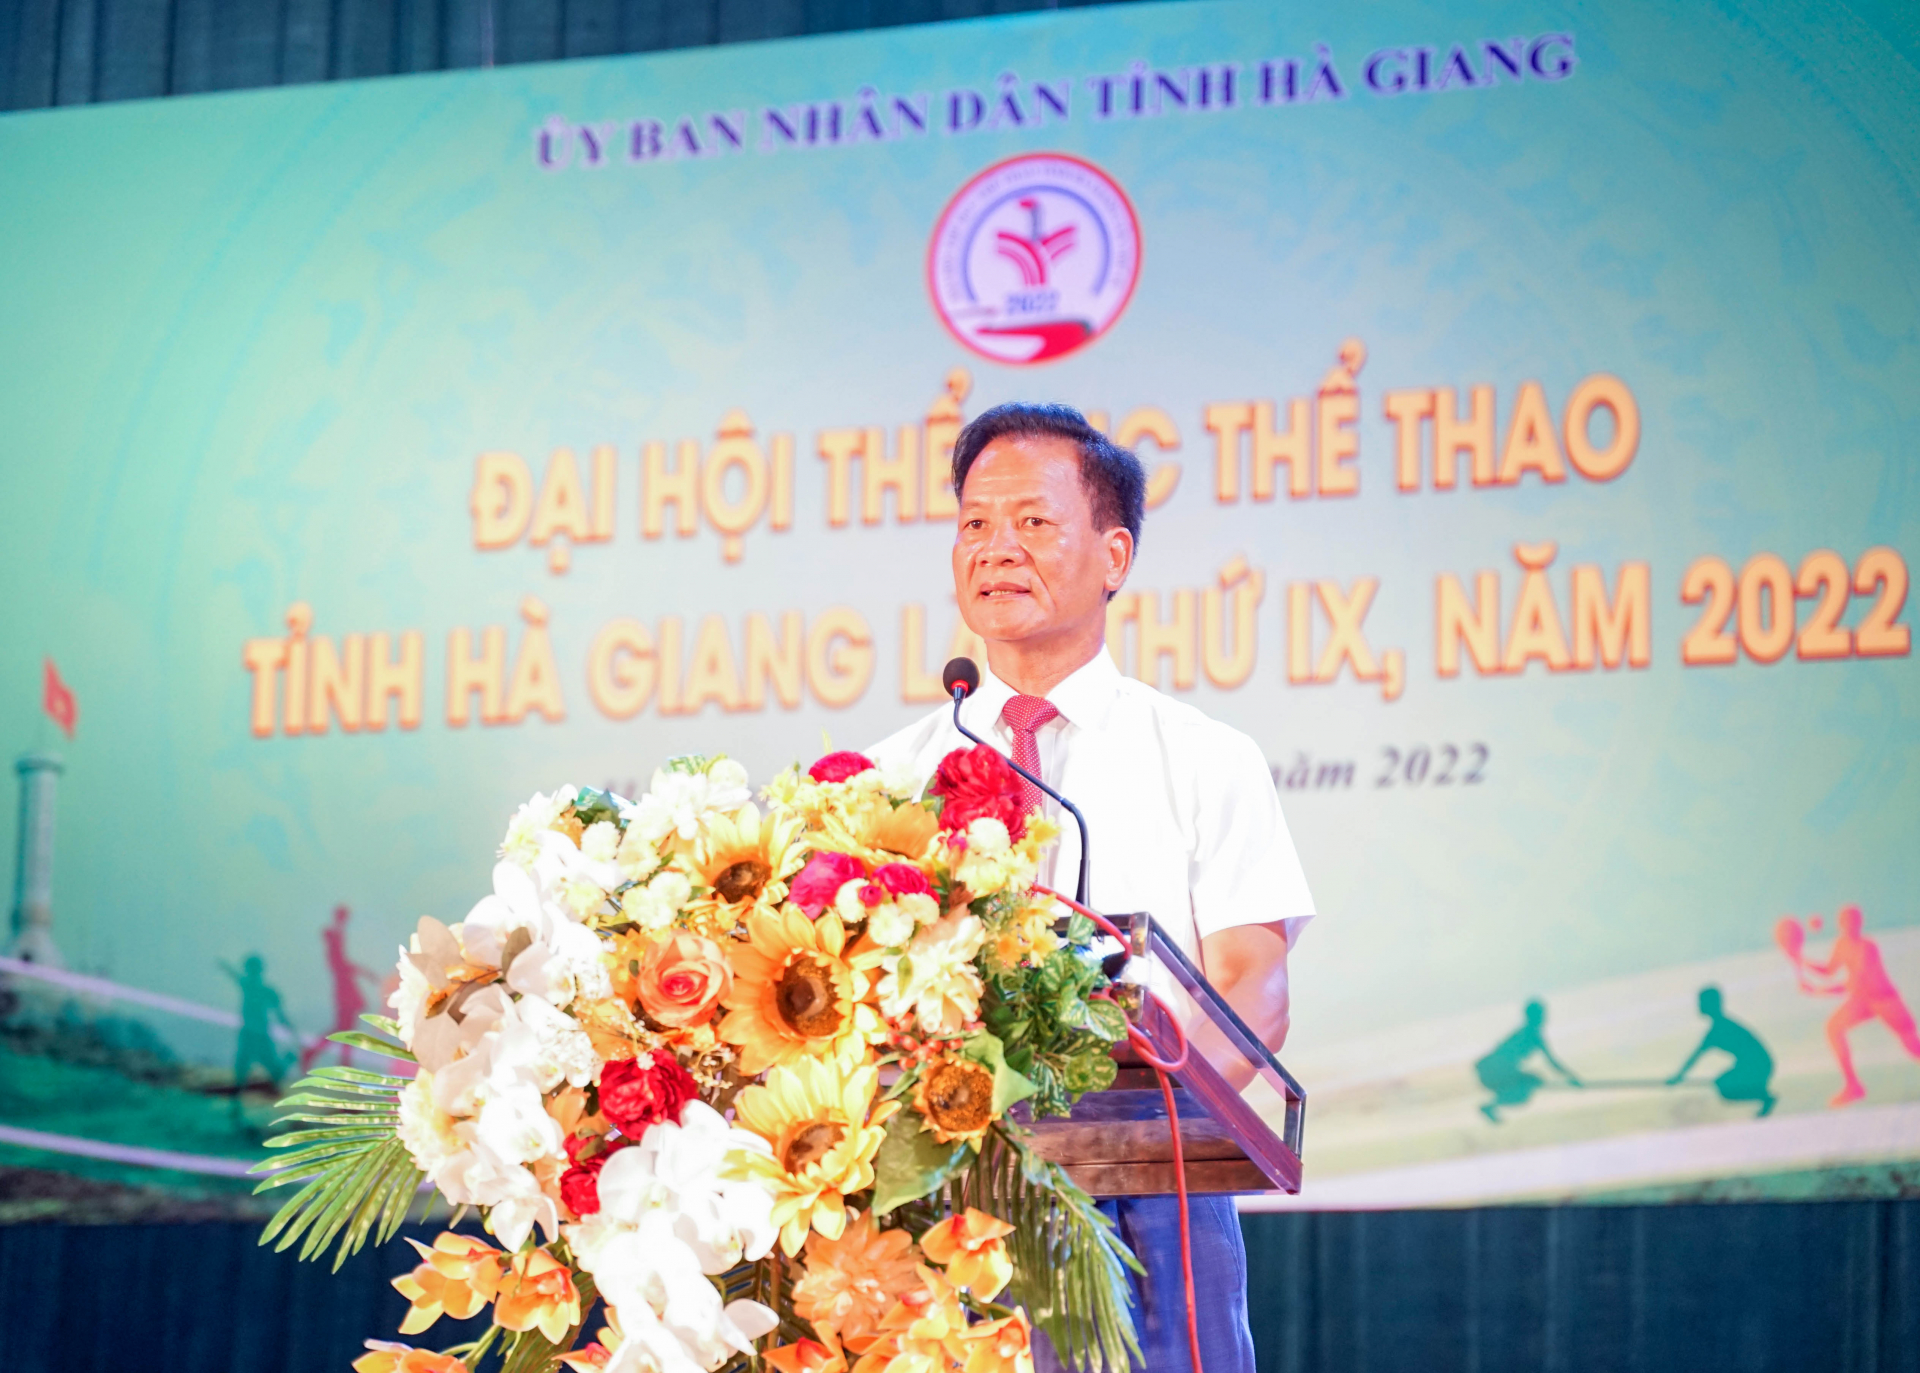 Giám đốc Sở VHTT&DL phát biểu tại tại bế mạc Đại hội TDTT tỉnh Hà Giang lần thứ IX, năm 2022.